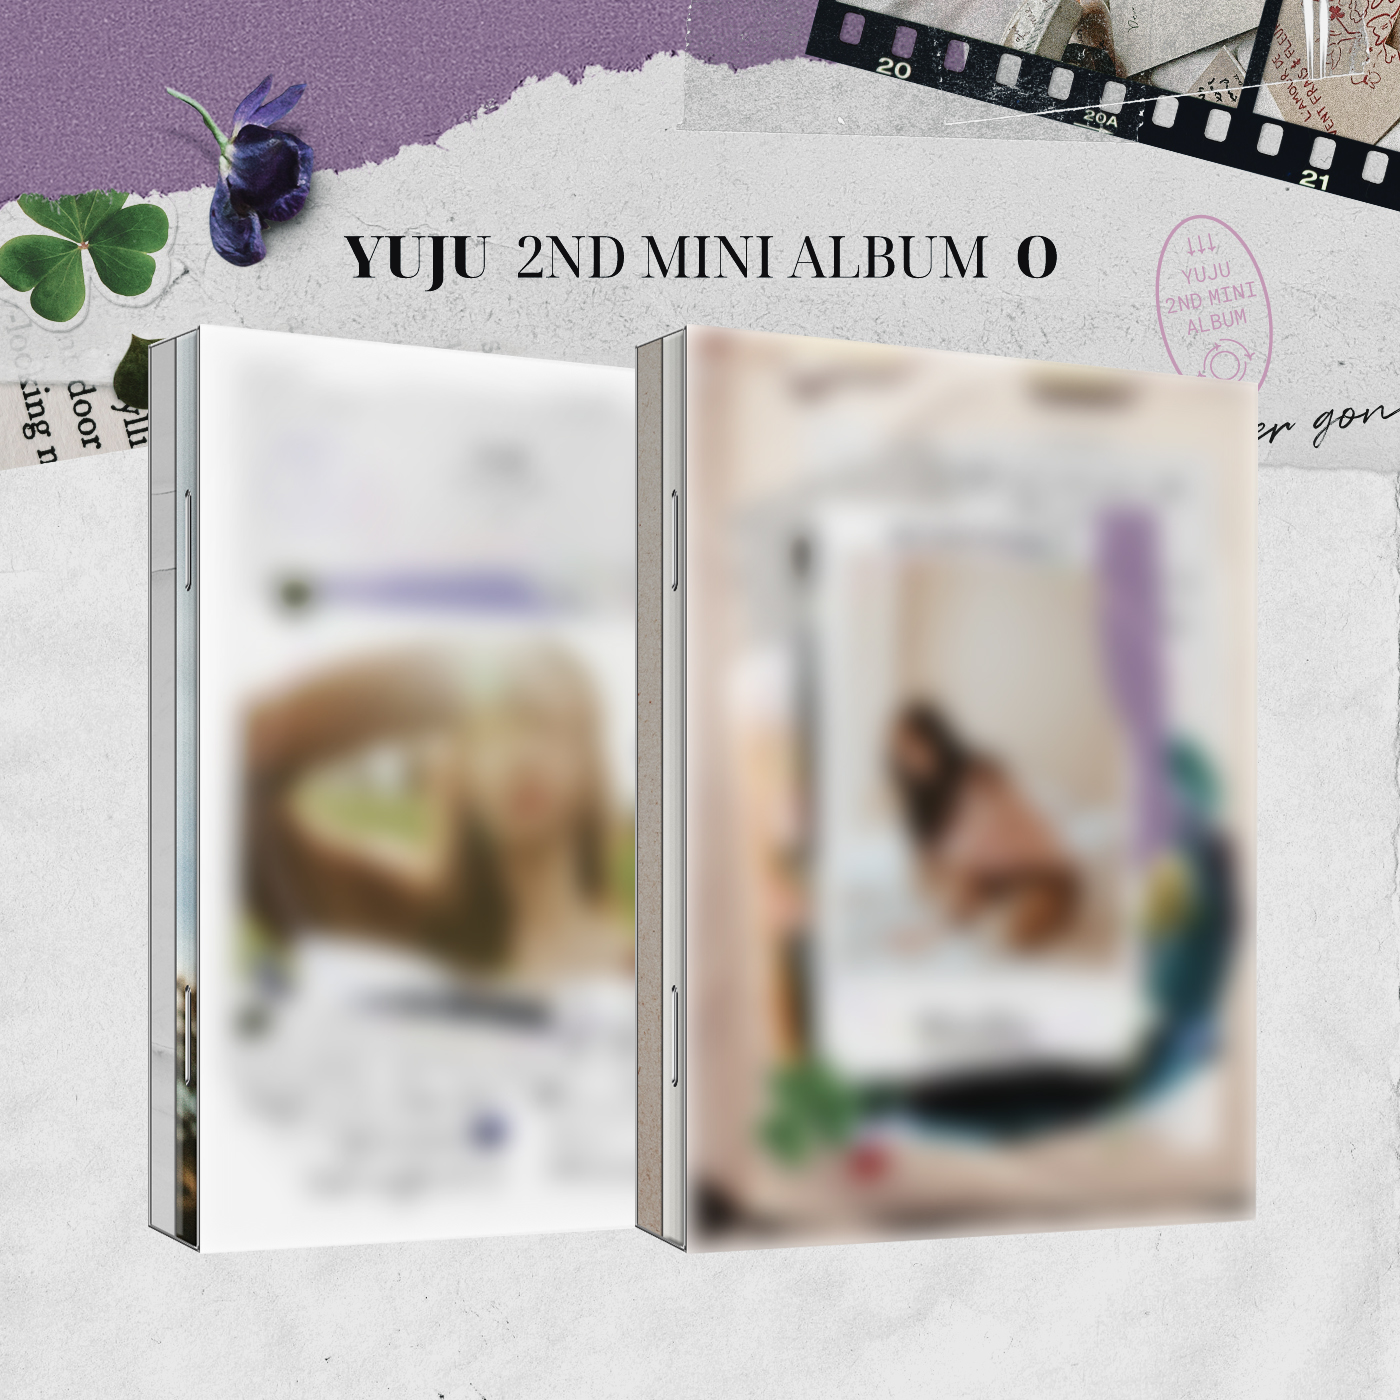 [全款 裸专][视频签售活动] [2CD 套装] YUJU - 迷你2辑 [O] (A Ver. + B Ver.)_崔俞娜全能站